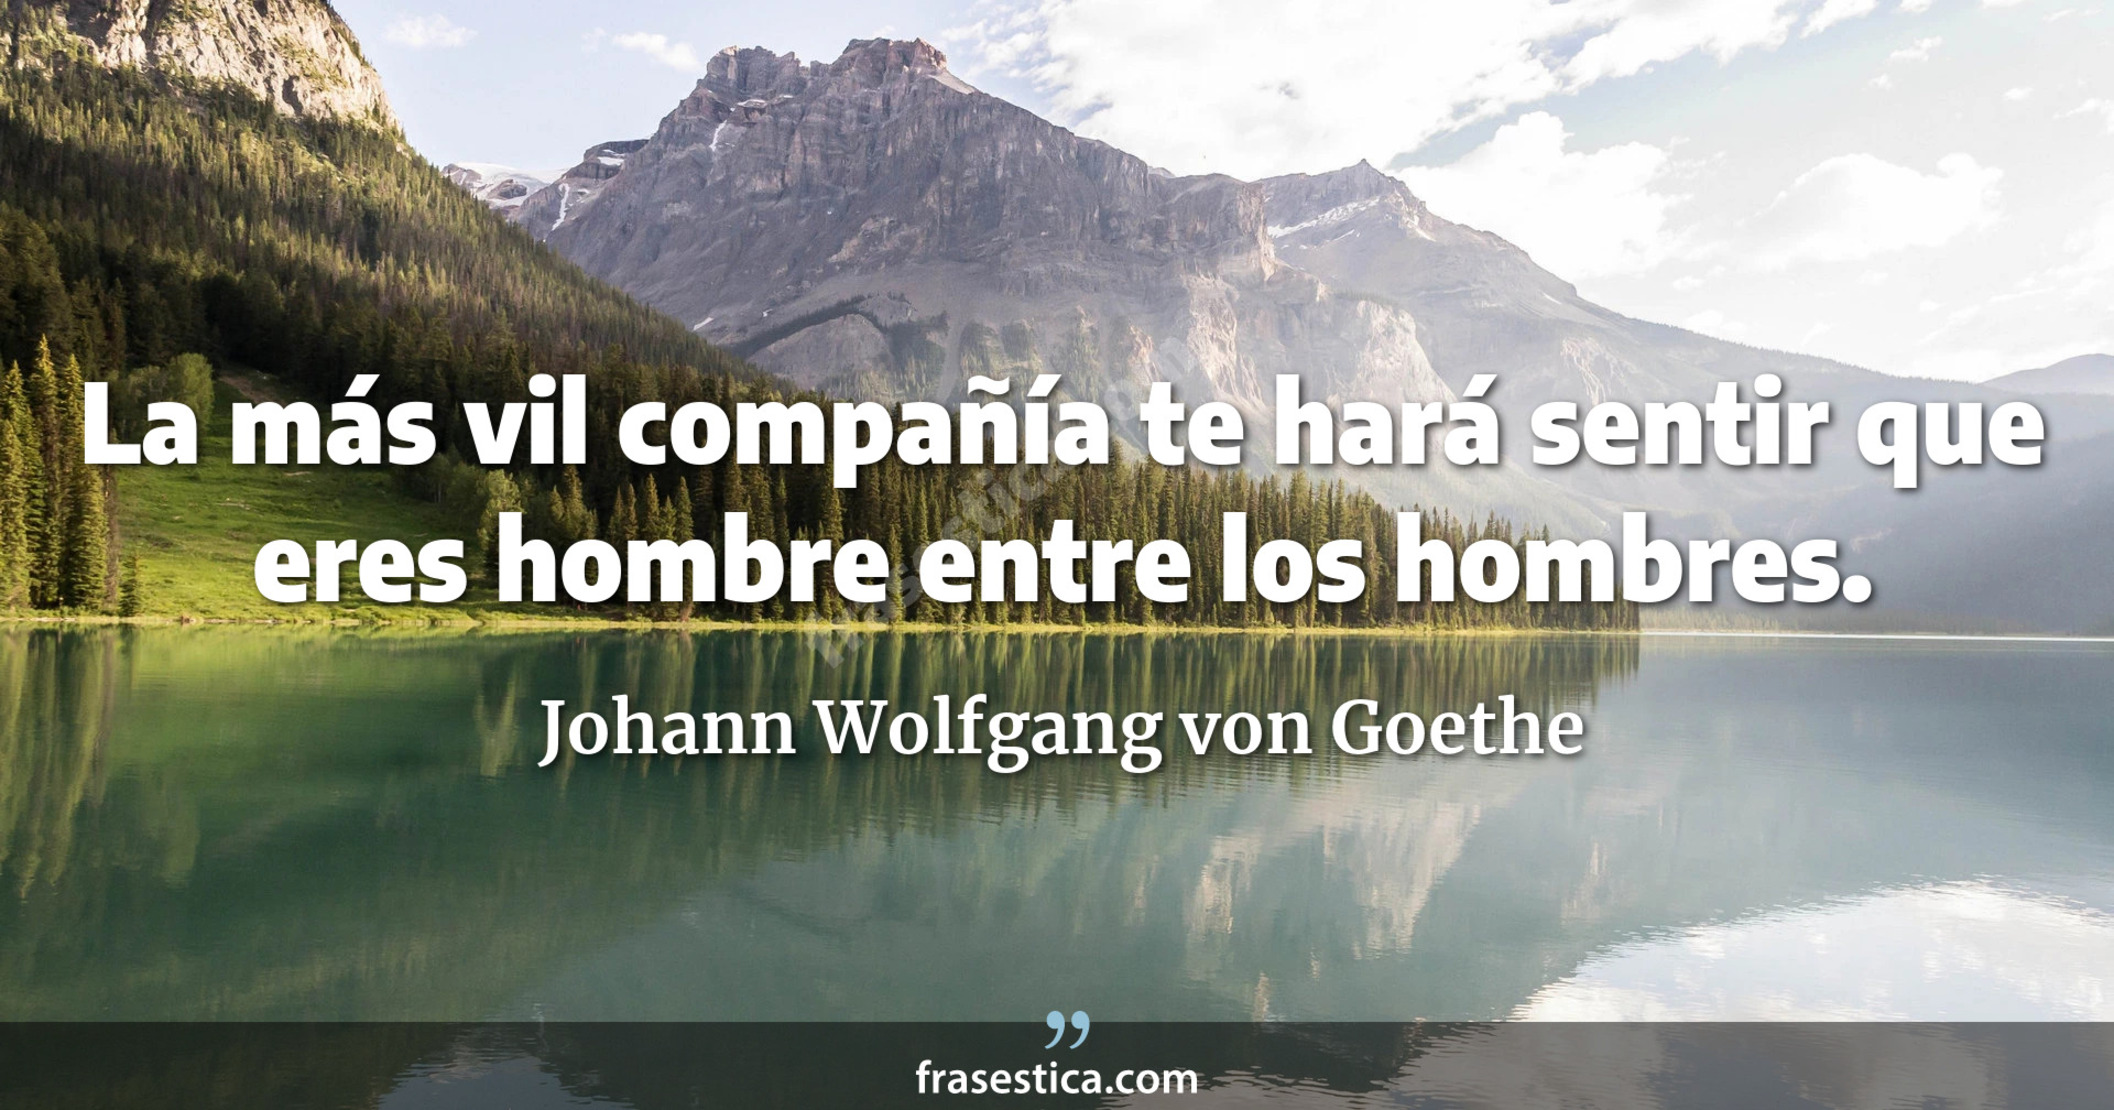 La más vil compañía te hará sentir que eres hombre entre los hombres. - Johann Wolfgang von Goethe